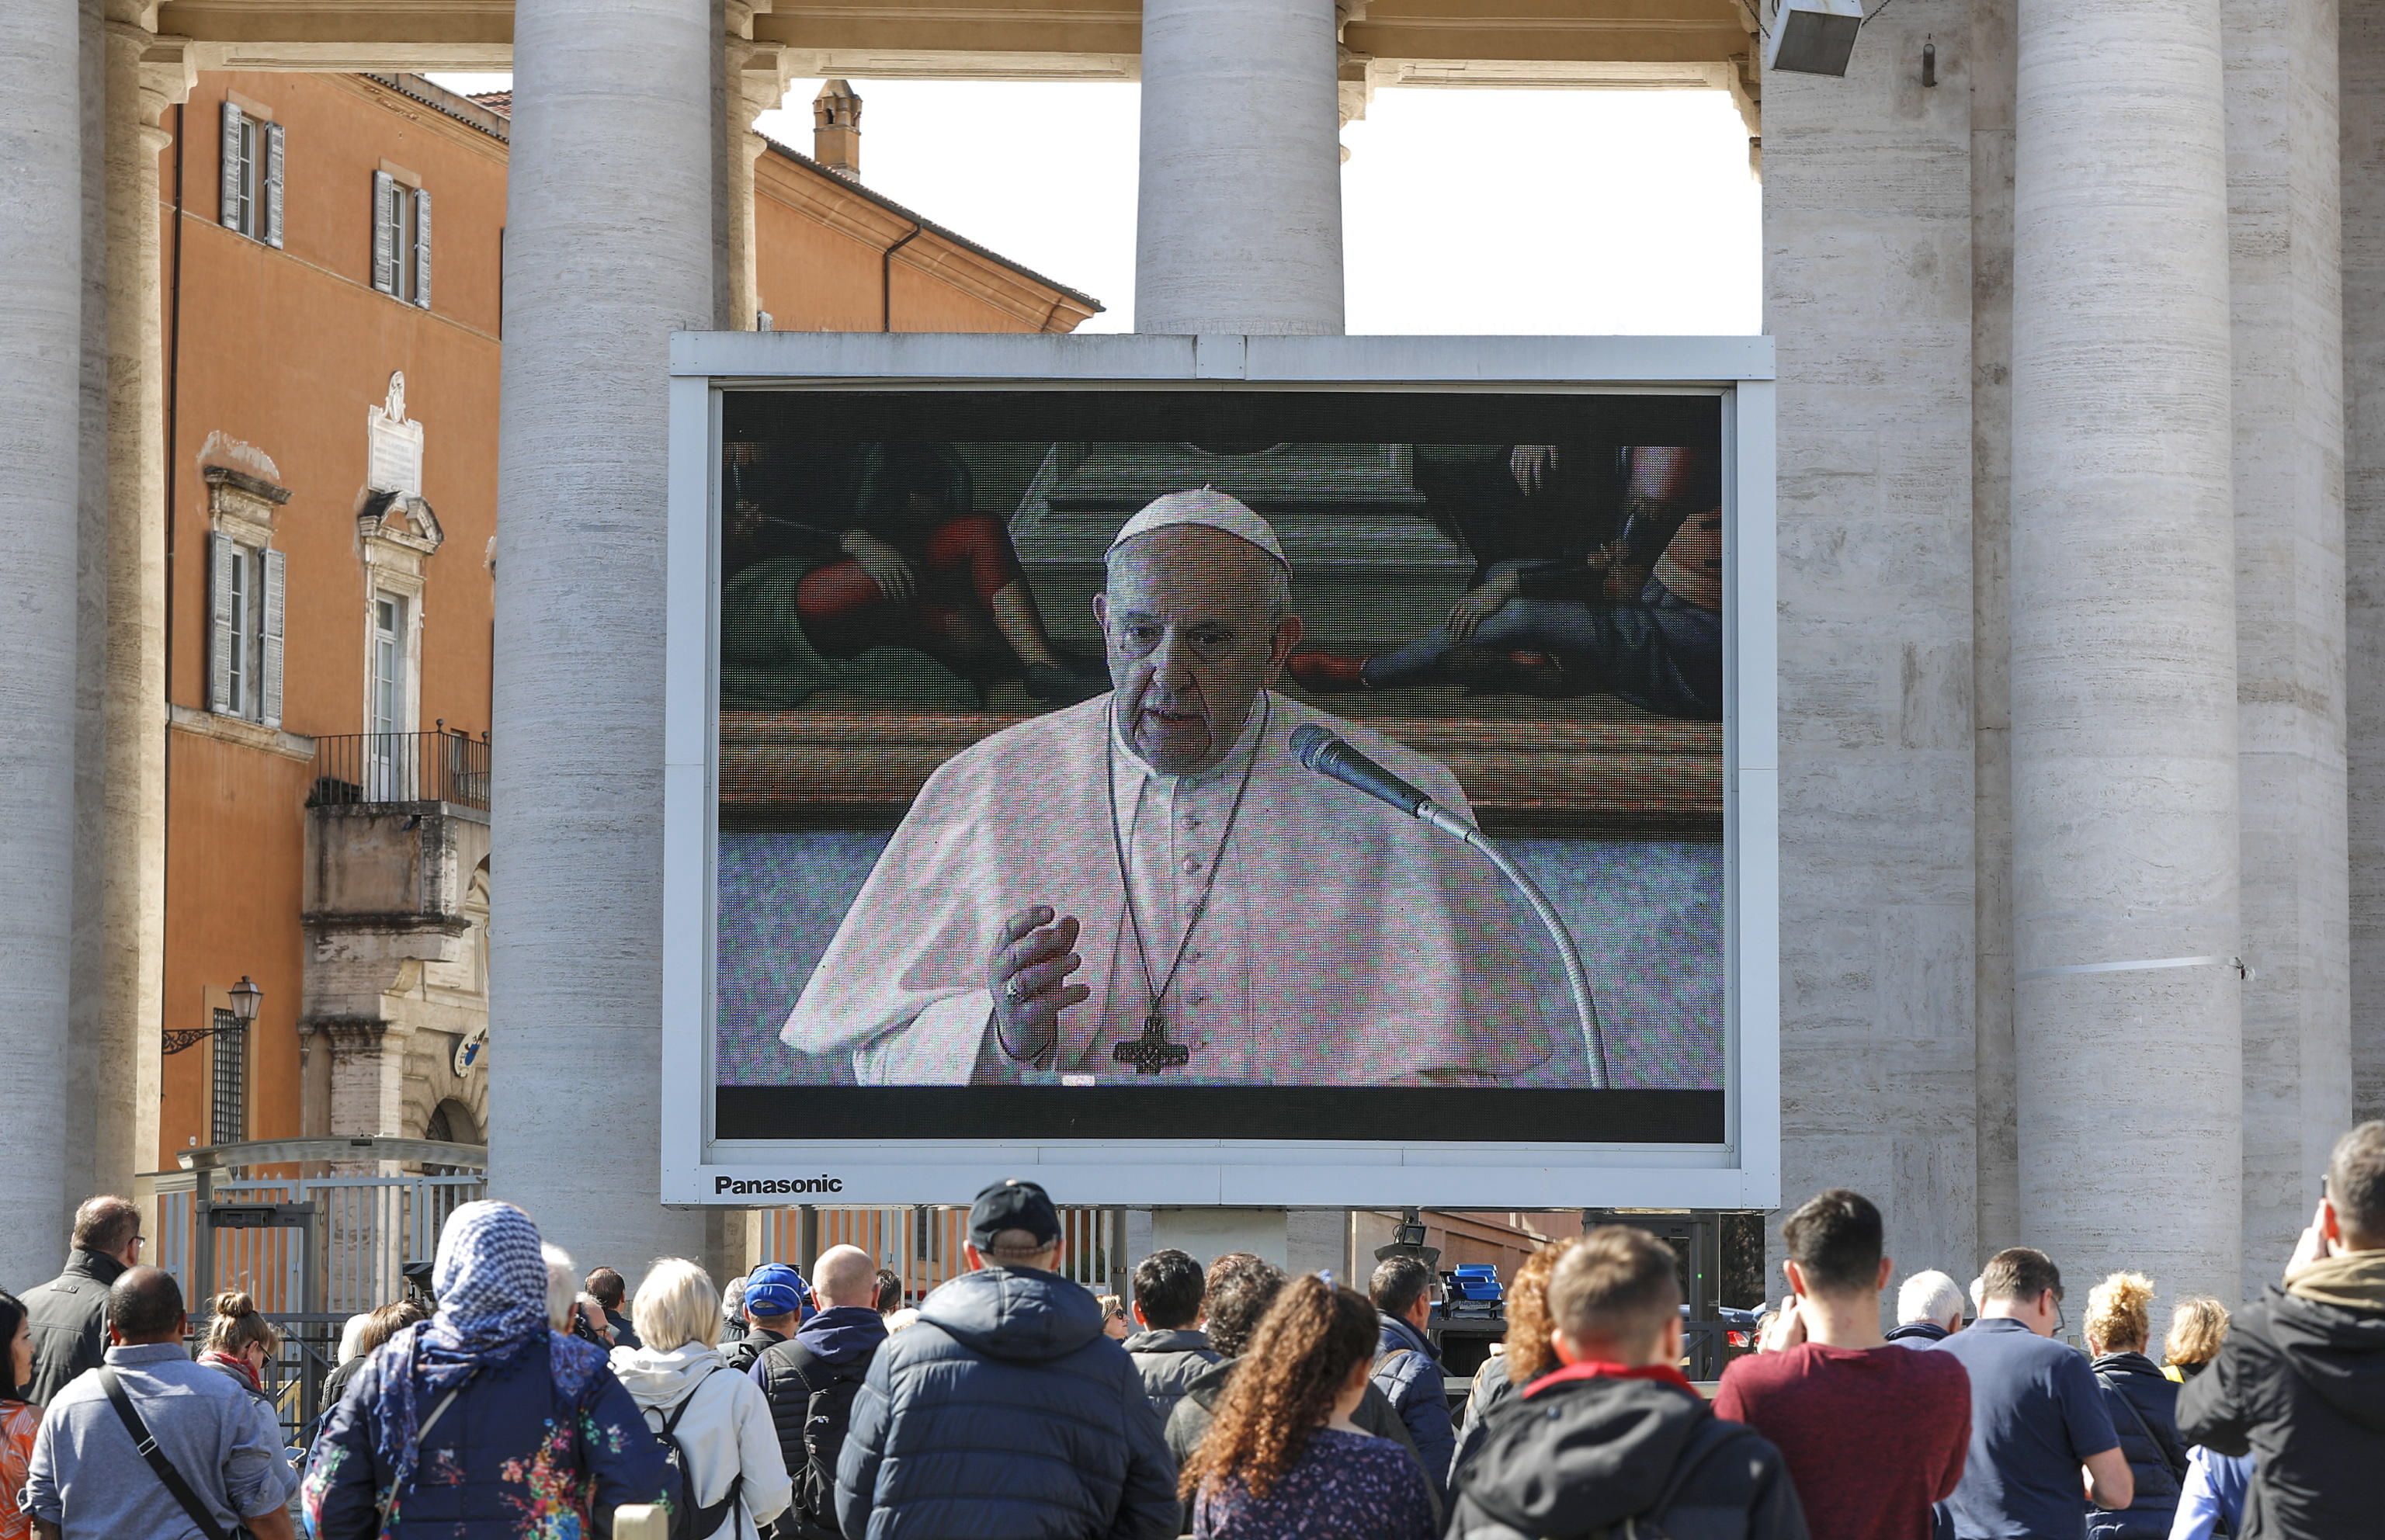 Turistas y fieles católicos con máscaras médicas observan una pantalla gigante instalada en la Plaza de San Pedro, Ciudad del Vaticano. (Foto Prensa Libre: EFE)